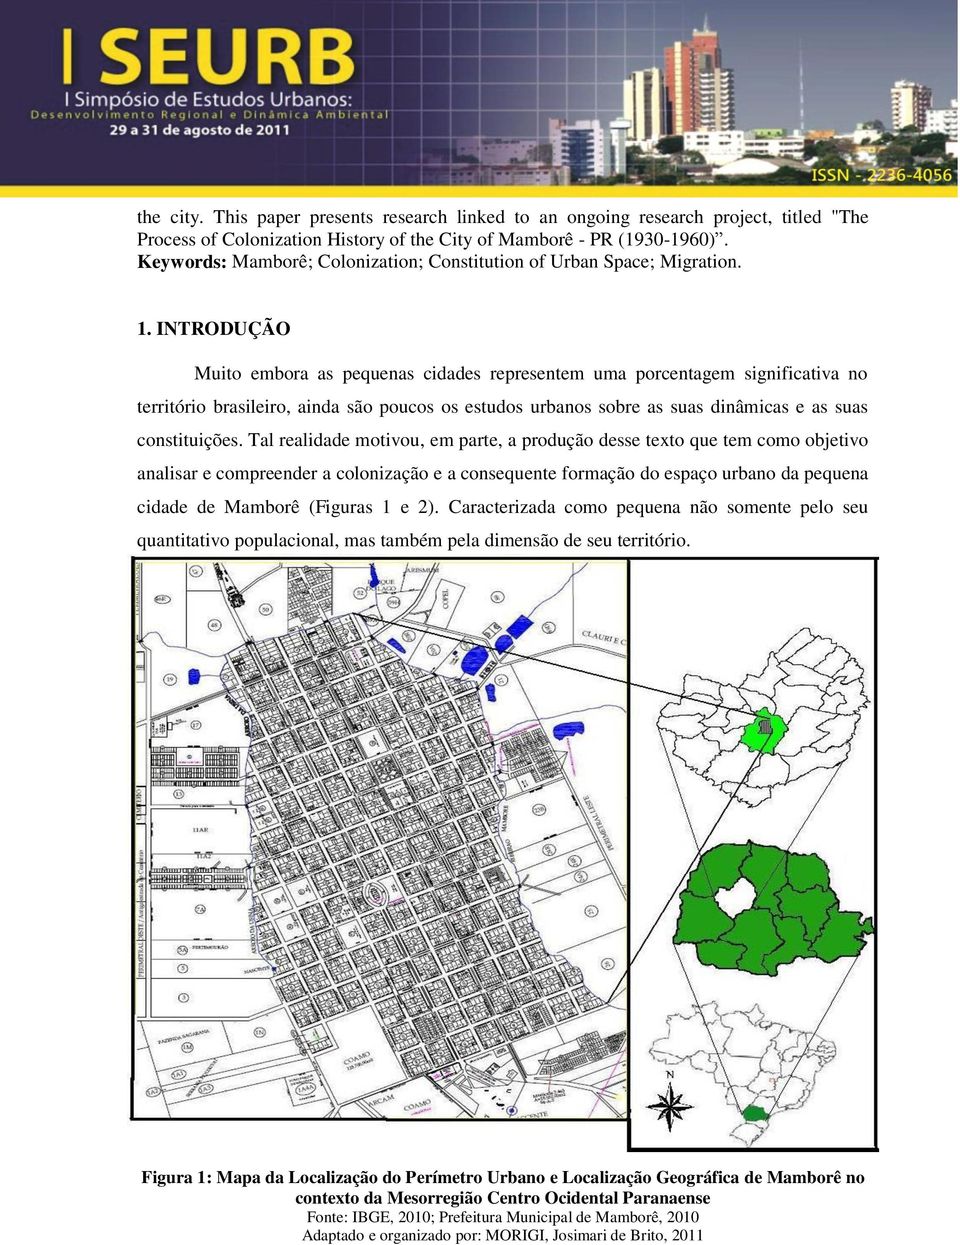 INTRODUÇÃO Muito embora as pequenas cidades representem uma porcentagem significativa no território brasileiro, ainda são poucos os estudos urbanos sobre as suas dinâmicas e as suas constituições.